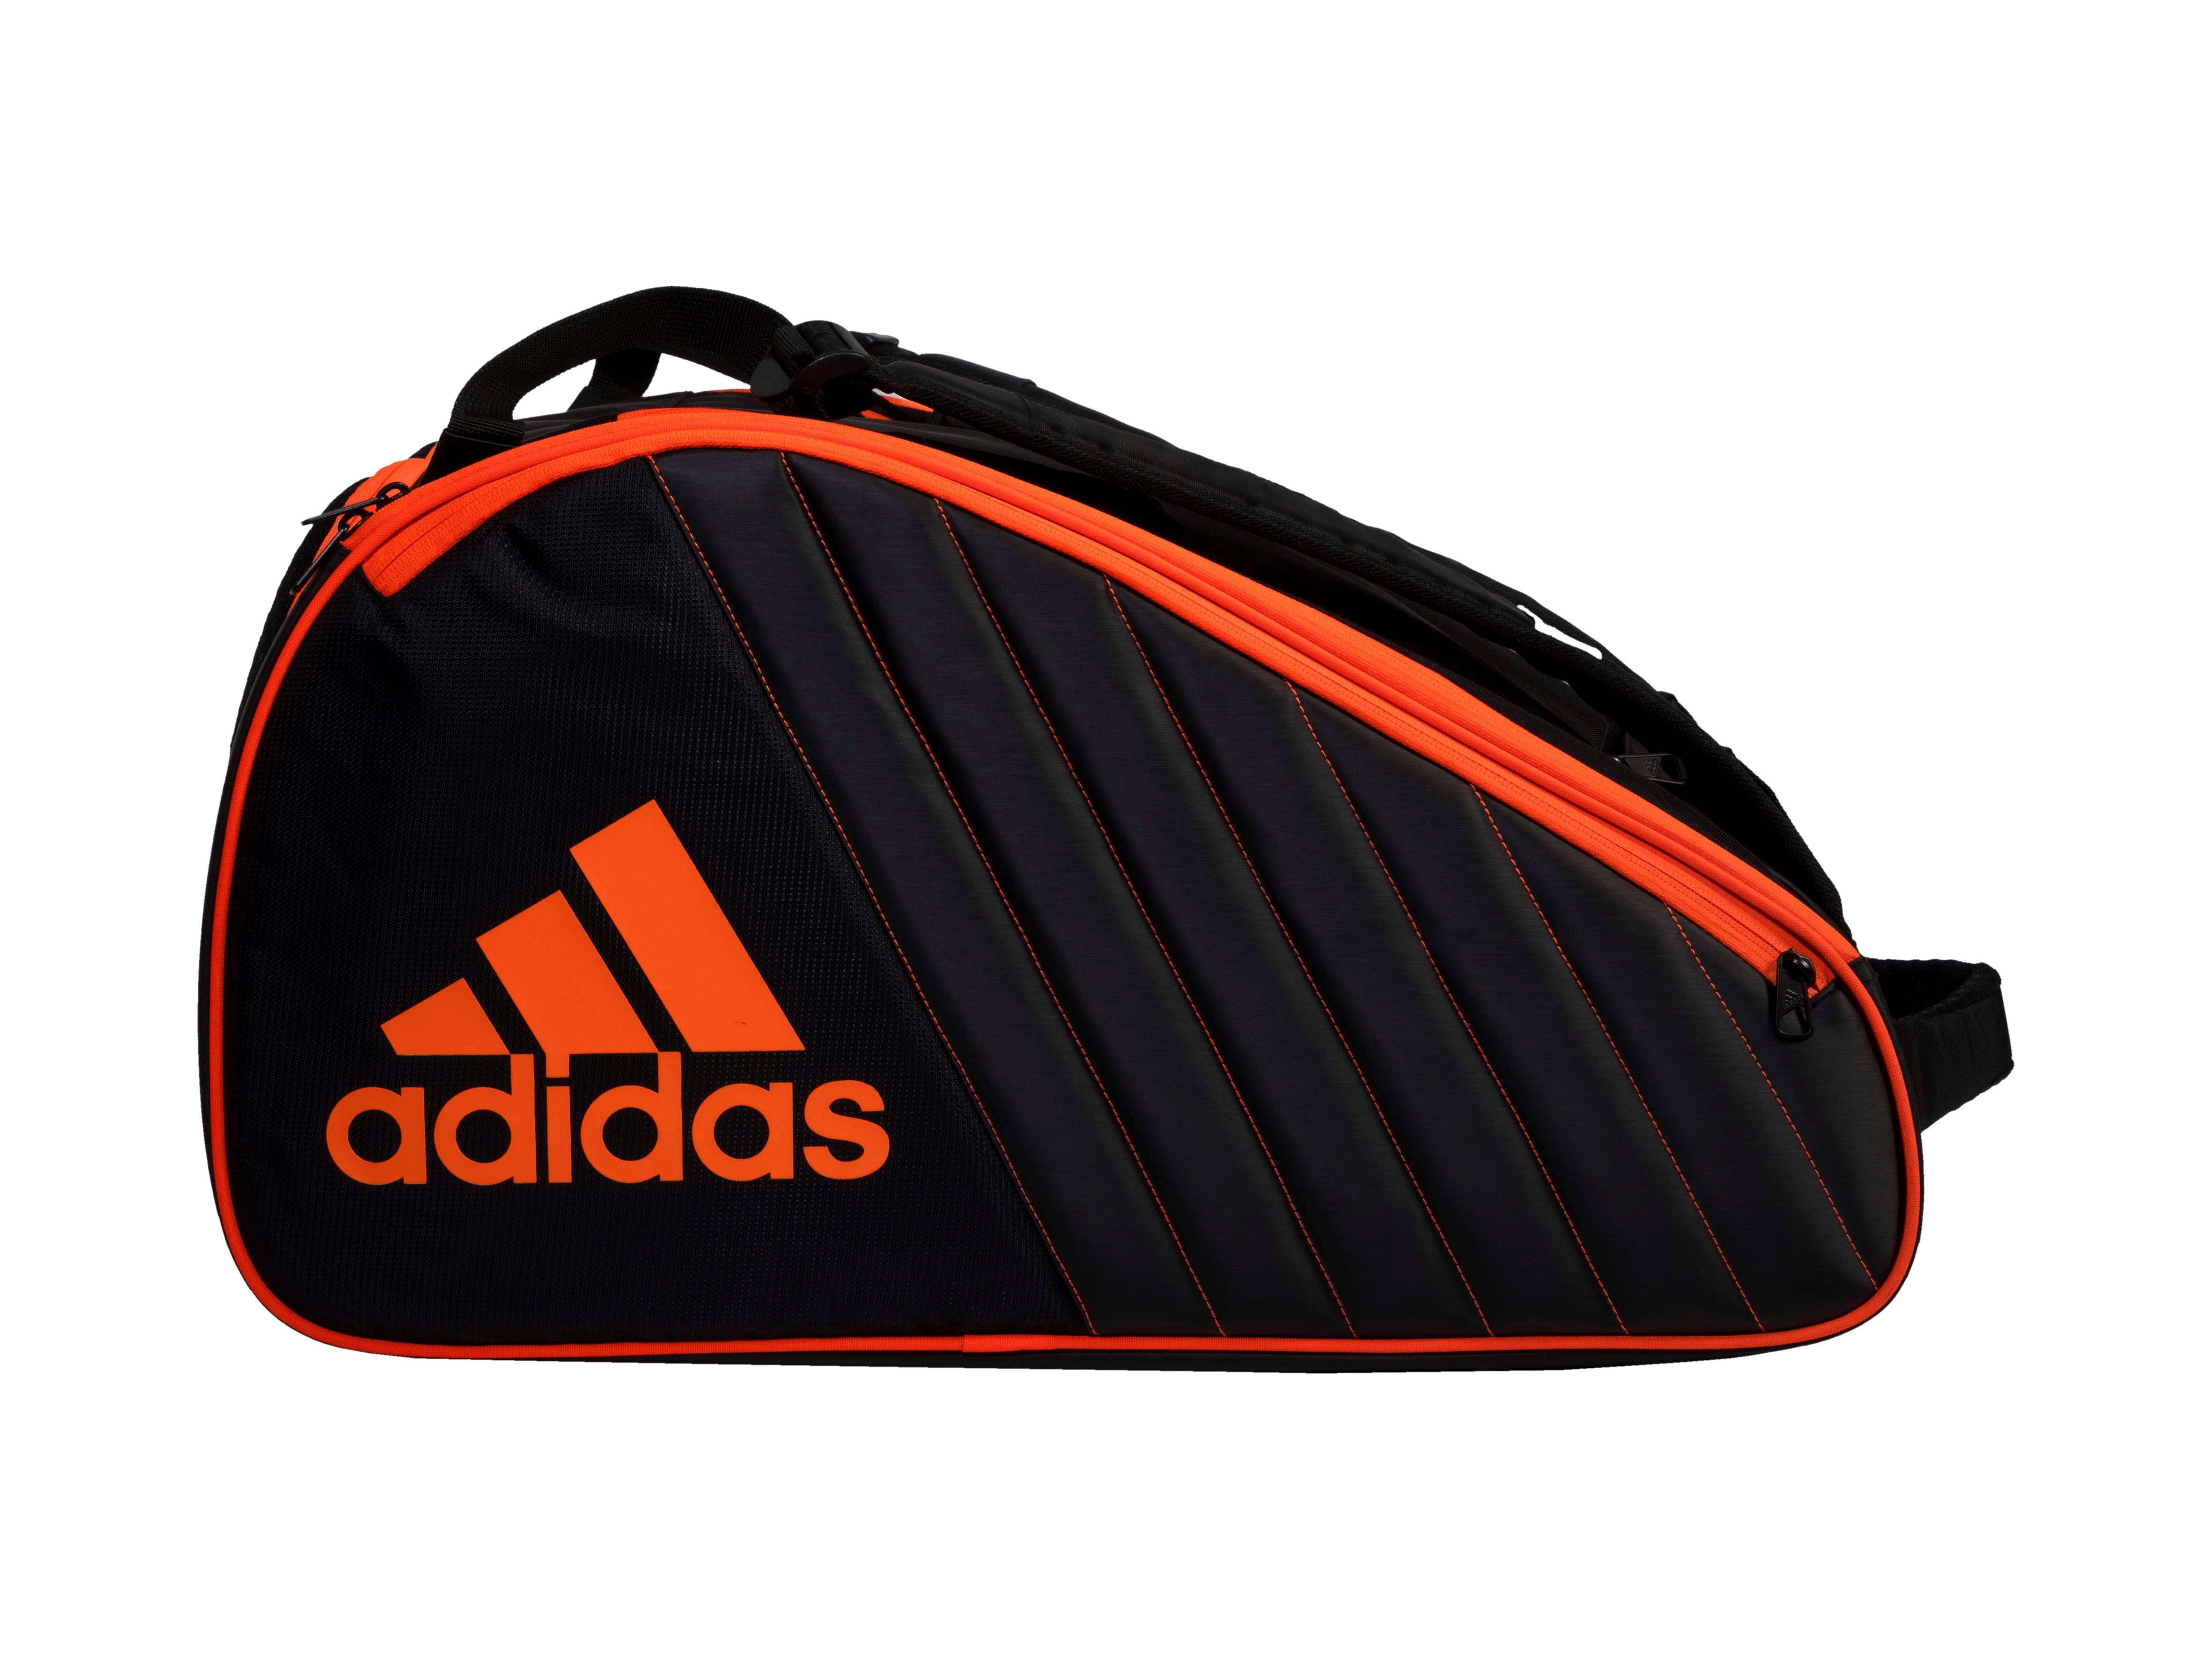 Adidas Pro Tour Padel Bag (Black/Orange)